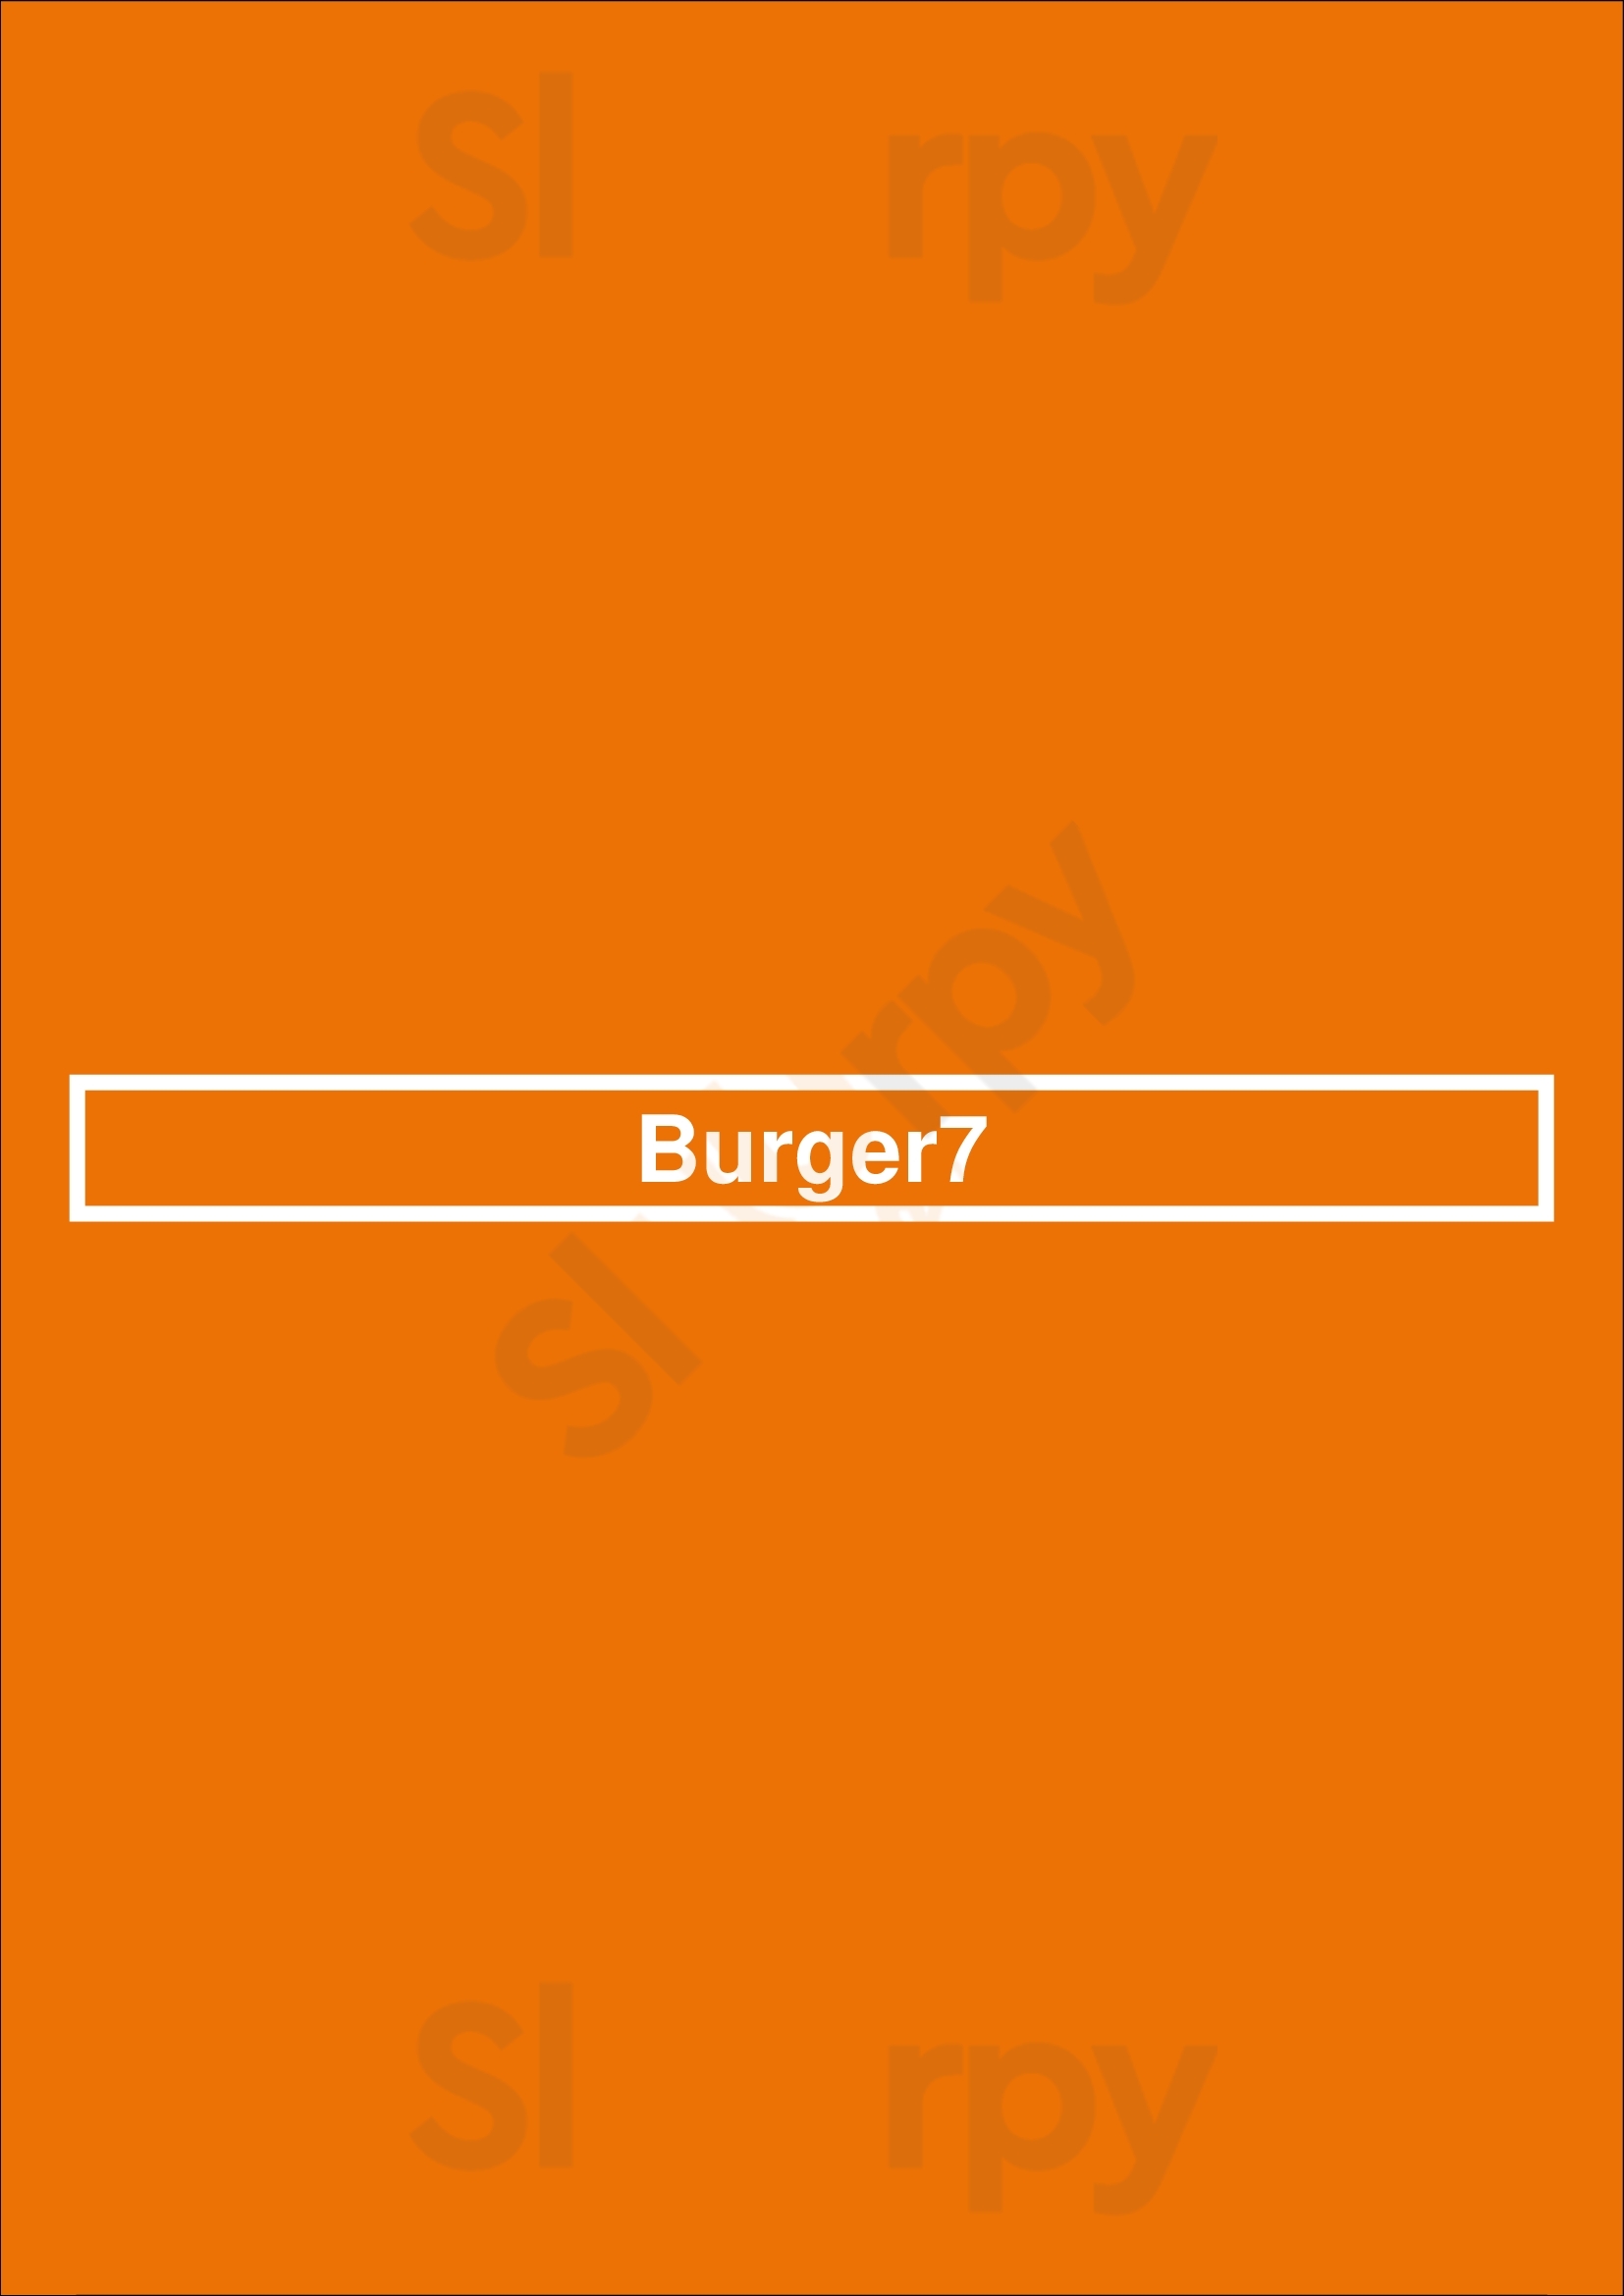 Burger 7 - Arlington, Va Arlington Menu - 1